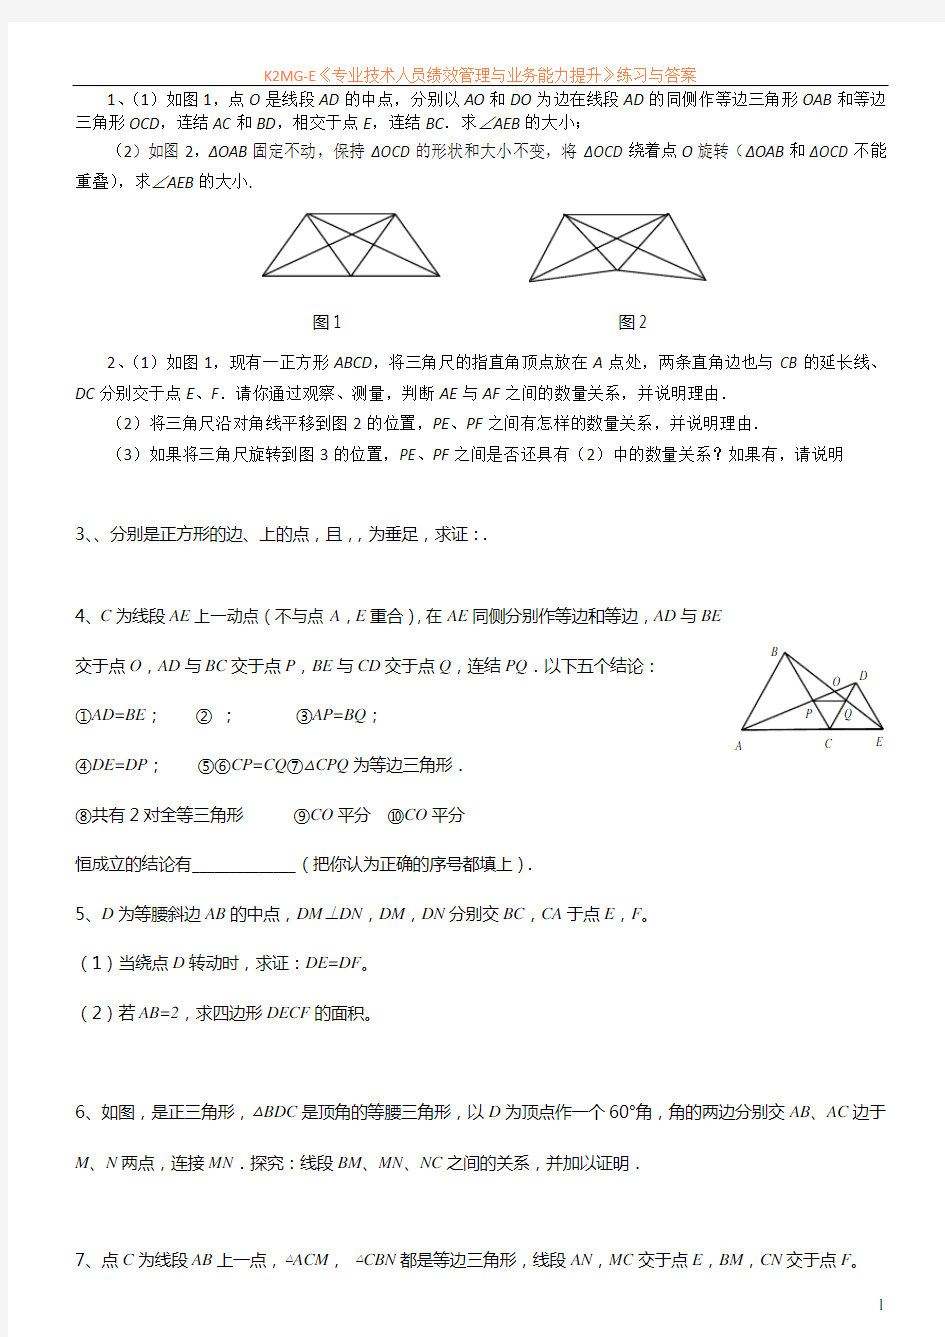 全等三角形难题集锦(整理)